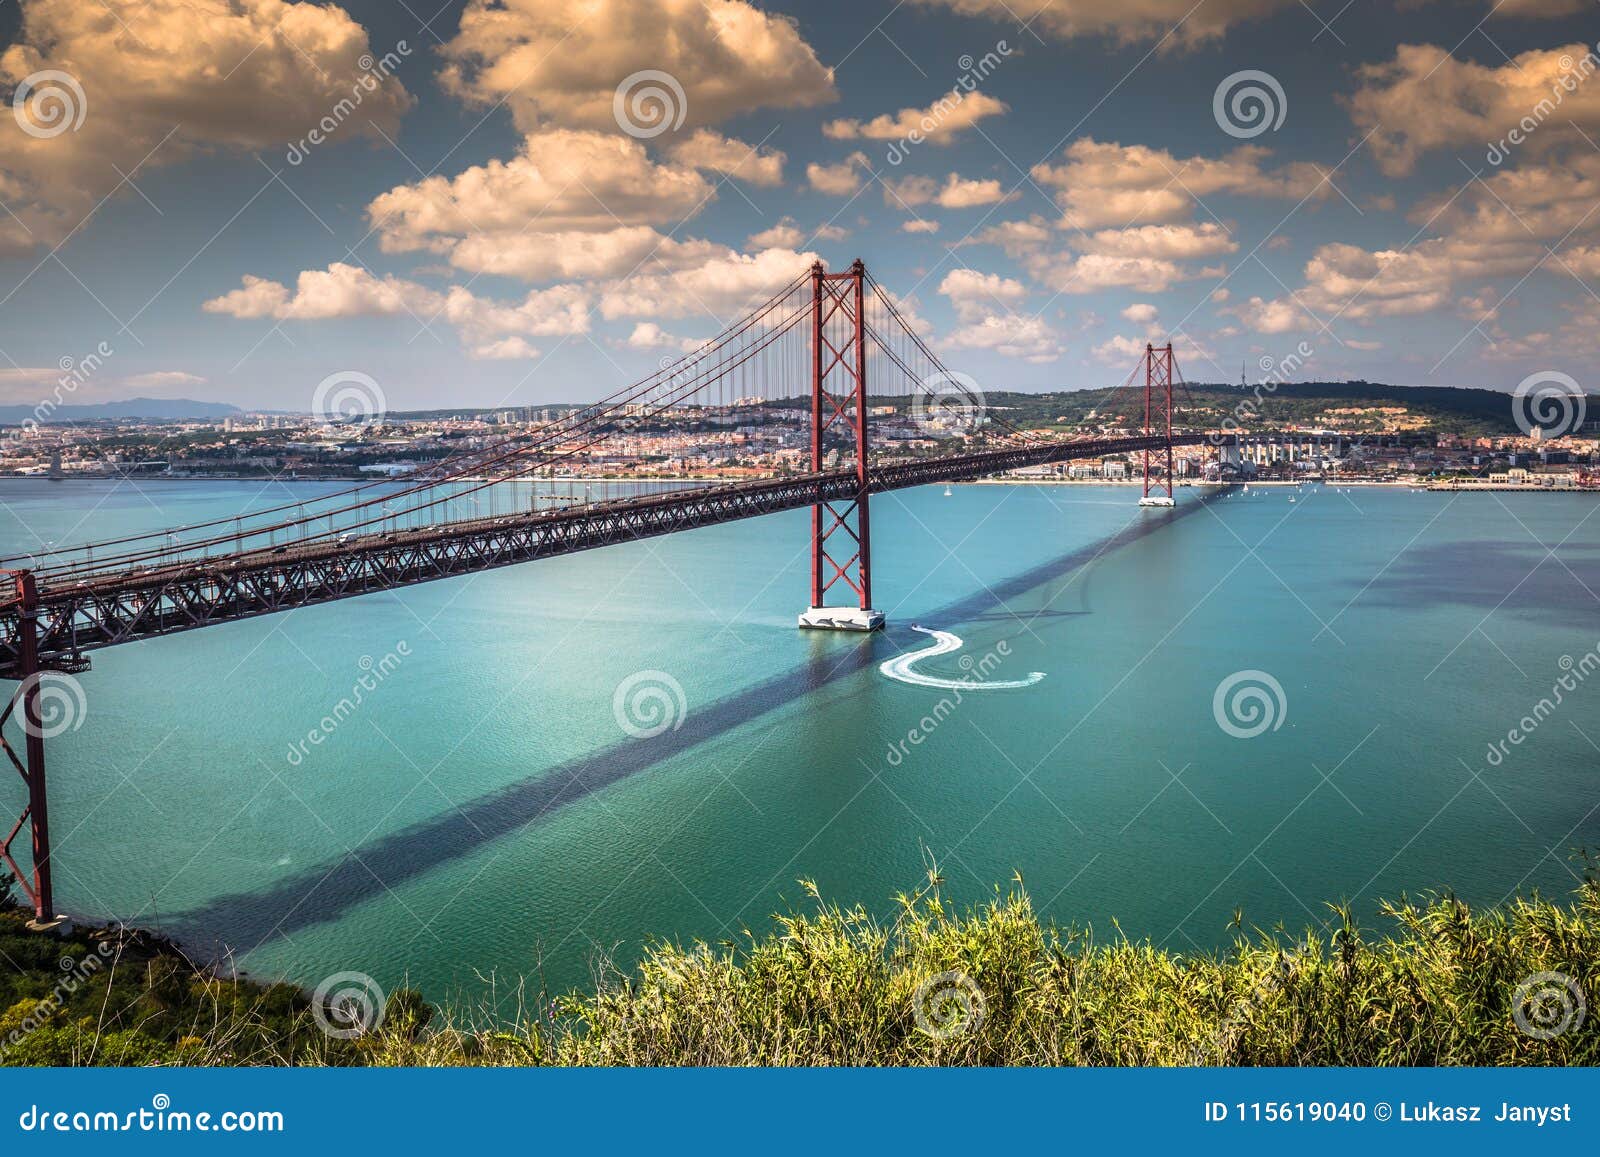 the 25 de abril bridge is a bridge connecting the city of lisbon